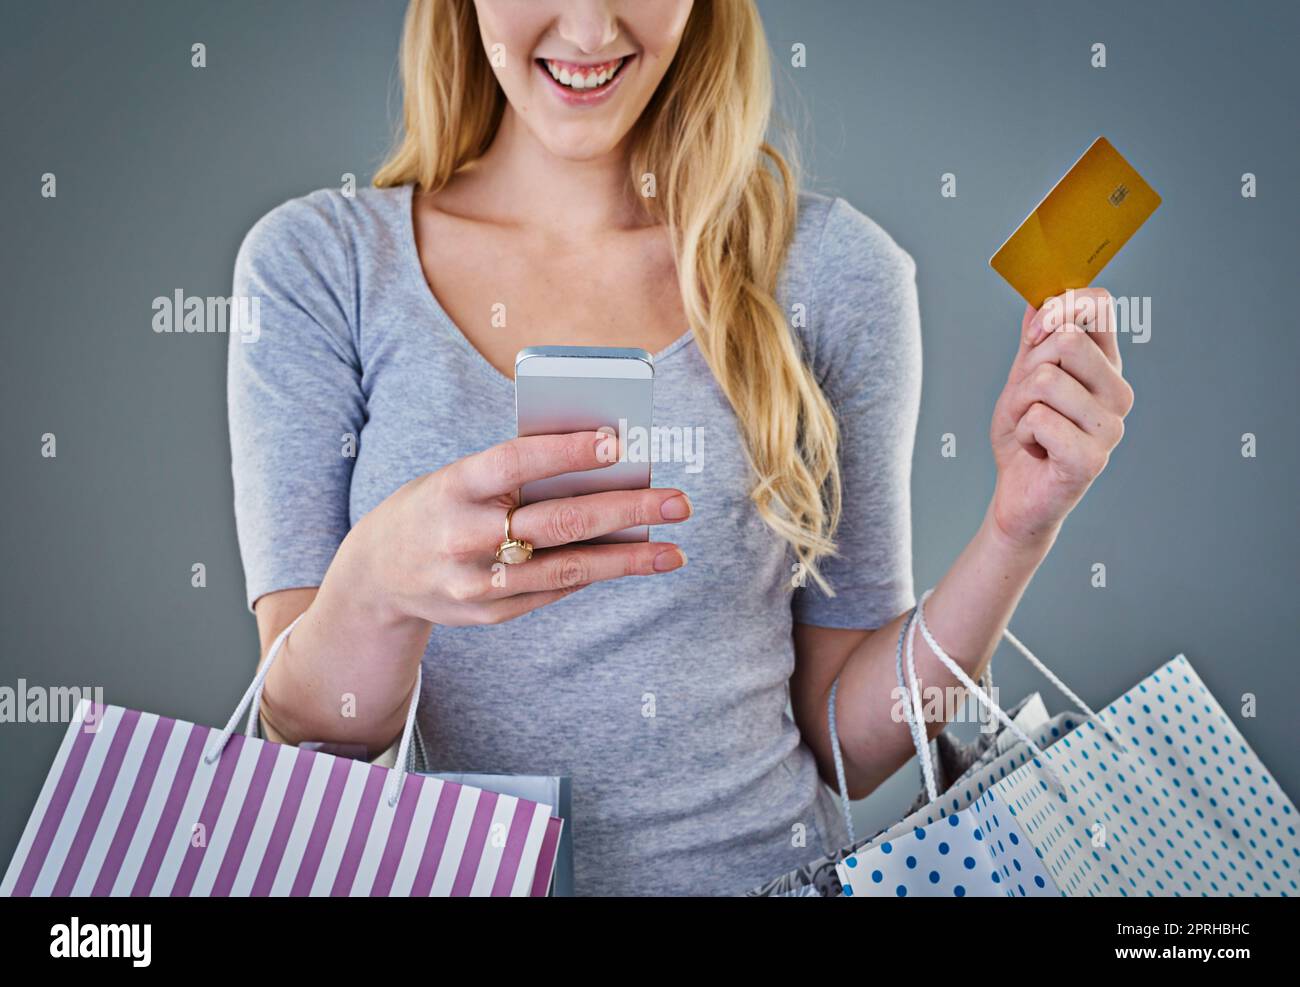 Glück ist Online-Shopping. Beschnittene Studioaufnahme einer jungen Frau, die ihr Smartphone, ihre Kreditkarte und ihre Einkaufstaschen in der Hand hält. Stockfoto